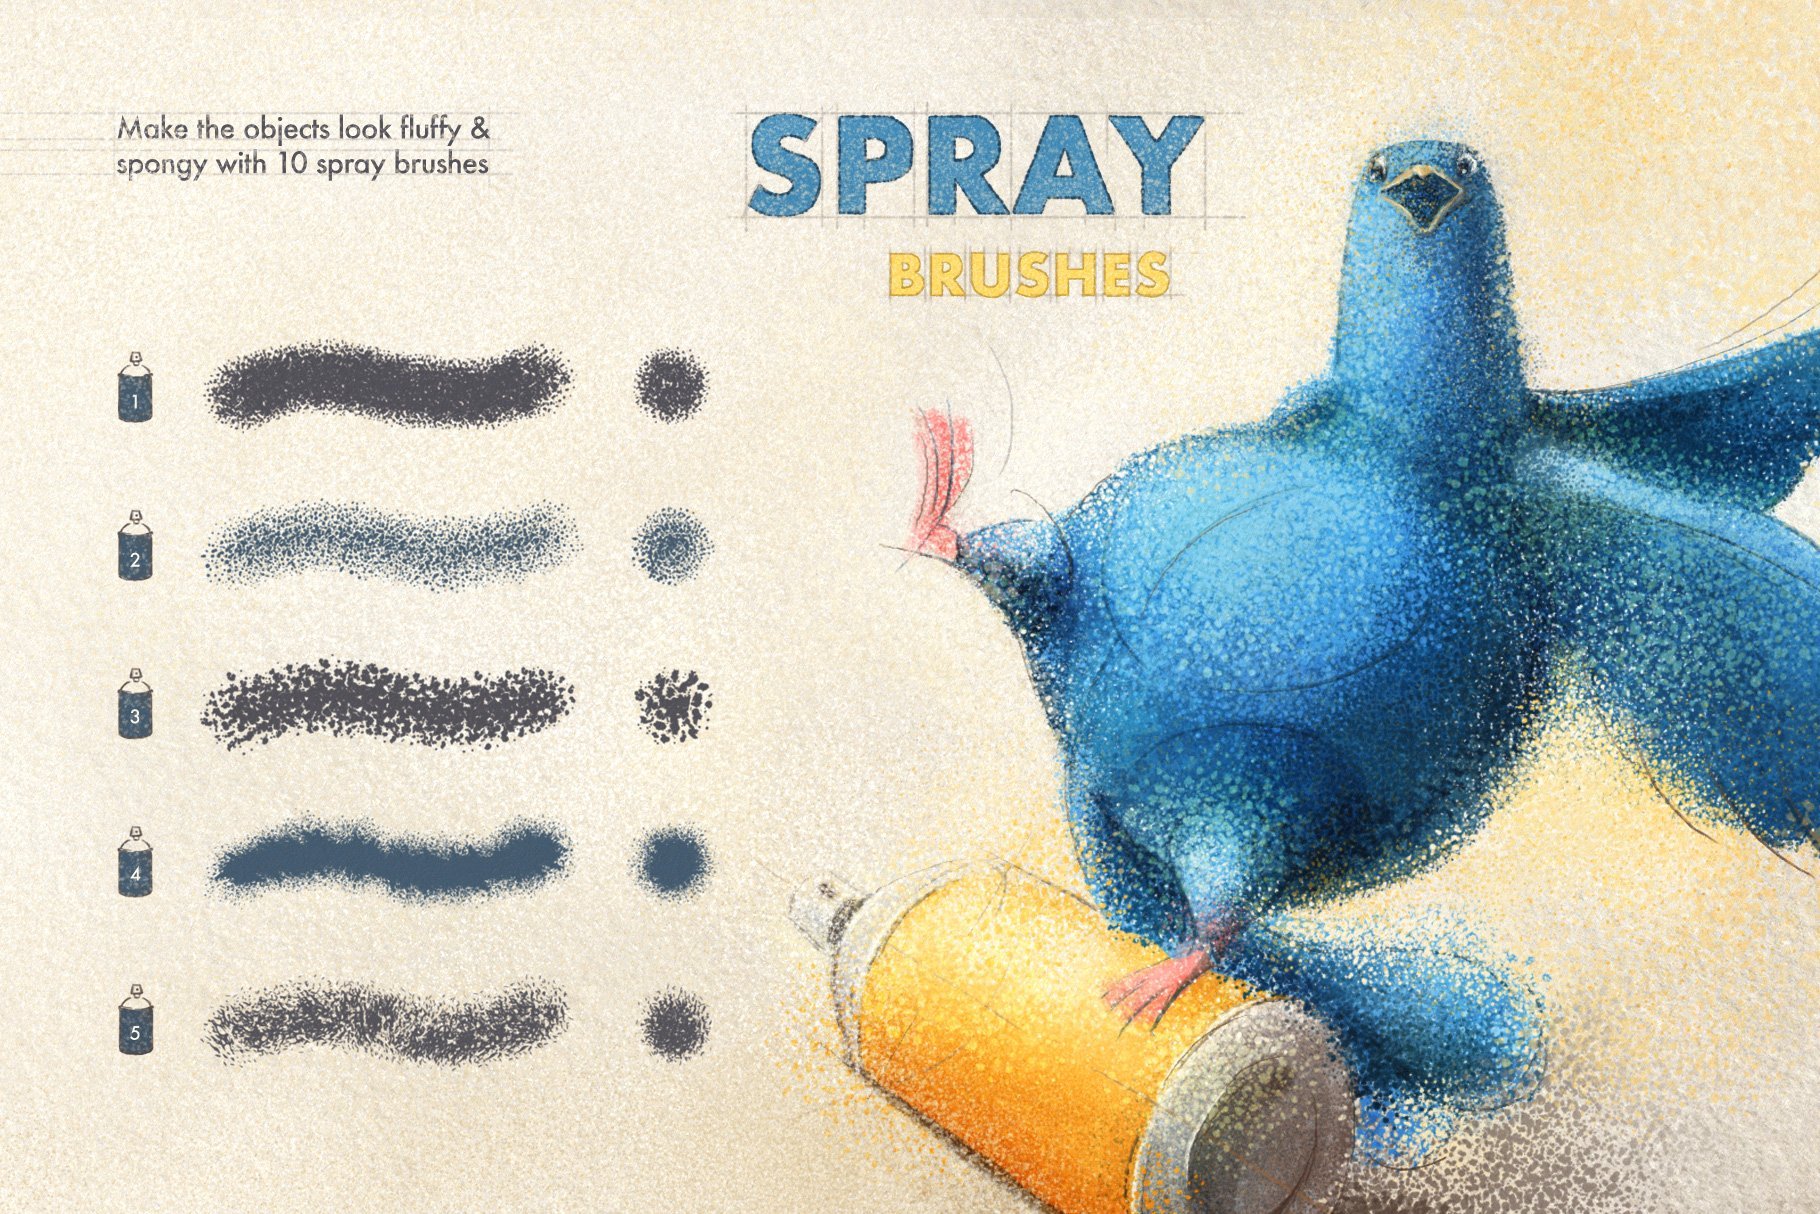 8 spray brushes 546